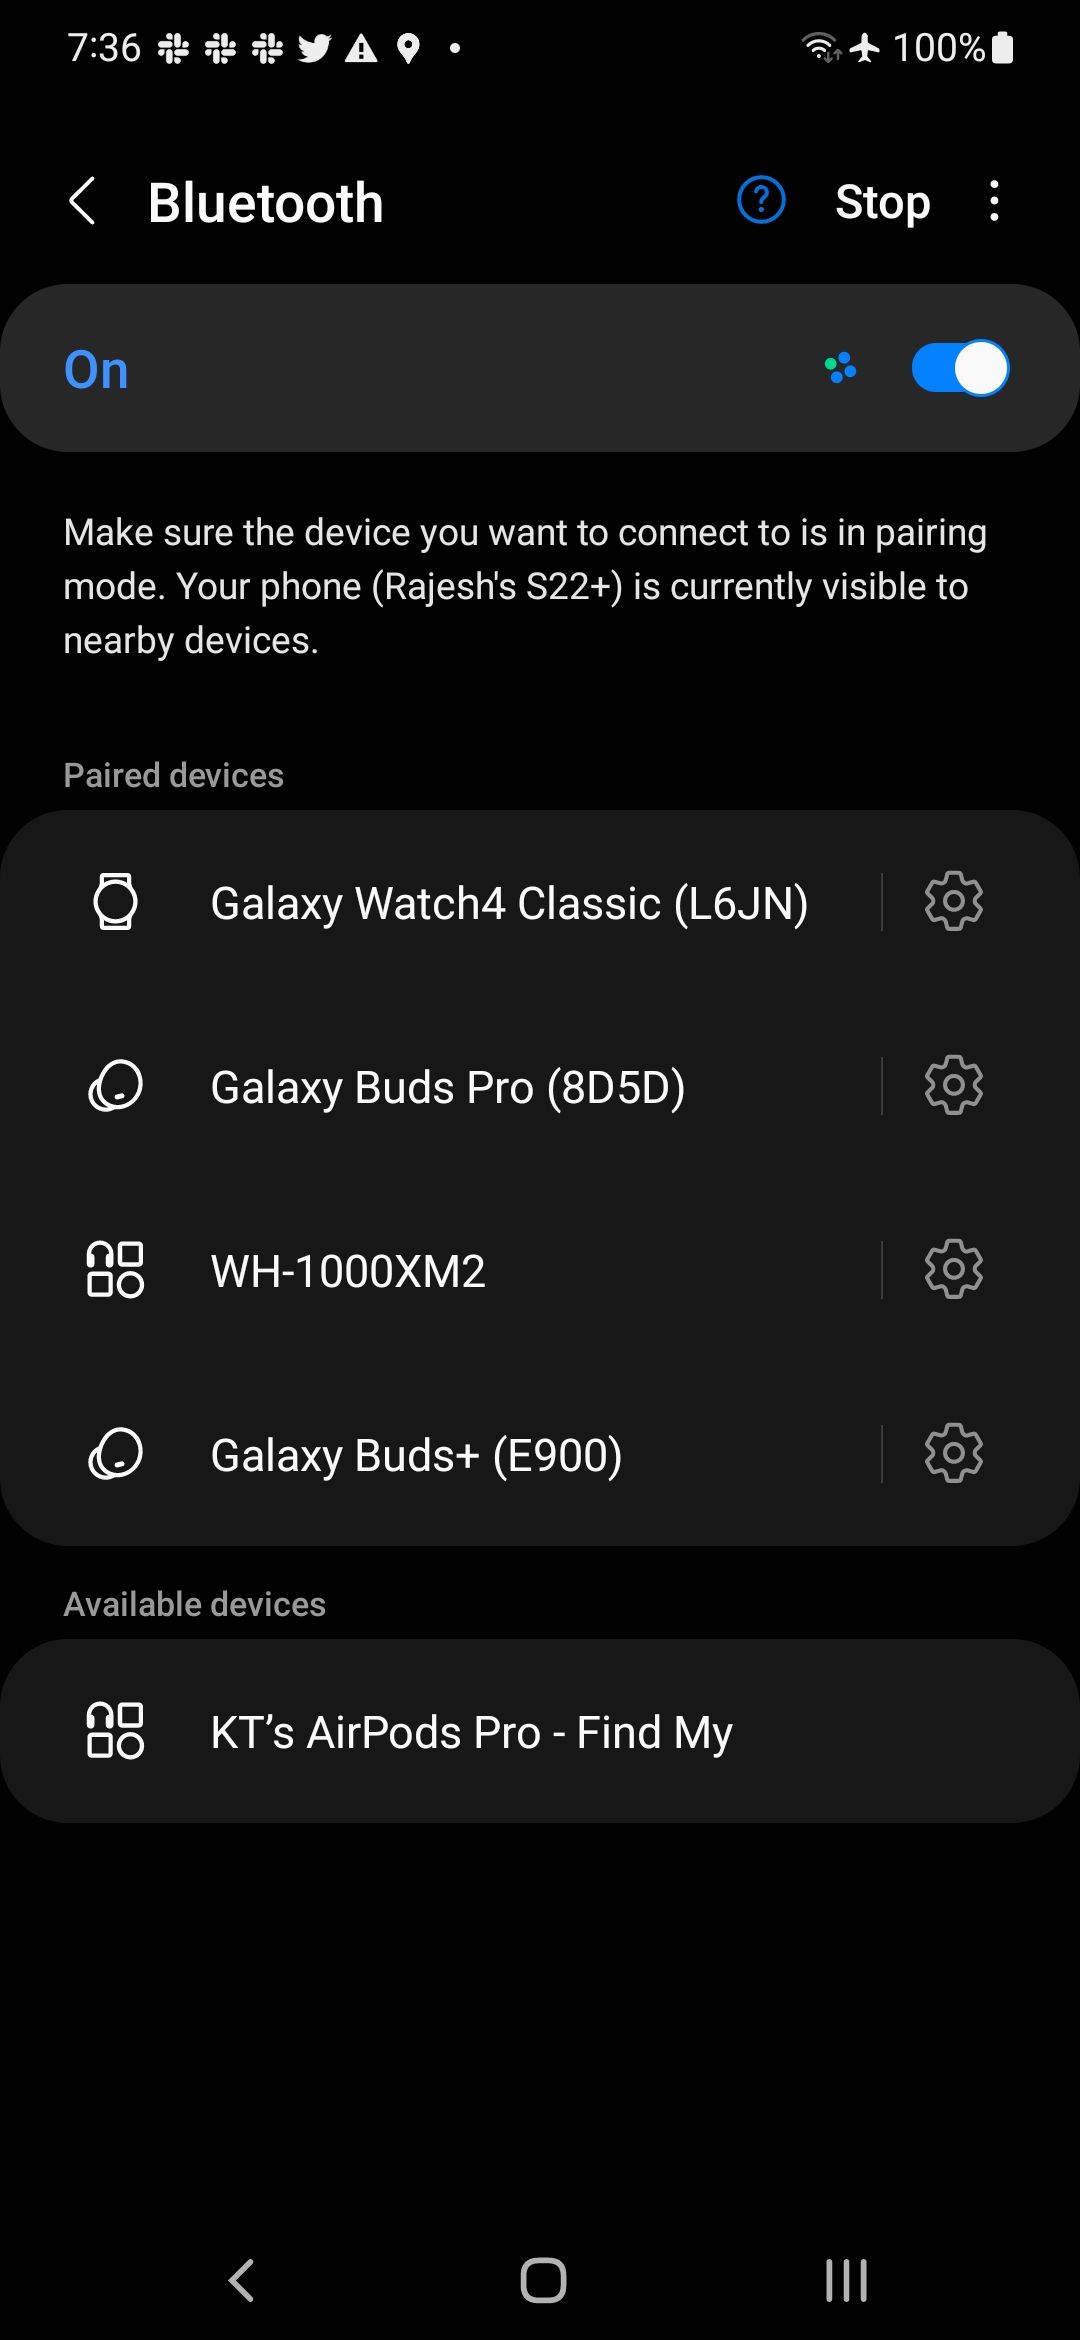 Ligue o Bluetooth para emparelhar AirPods com Android